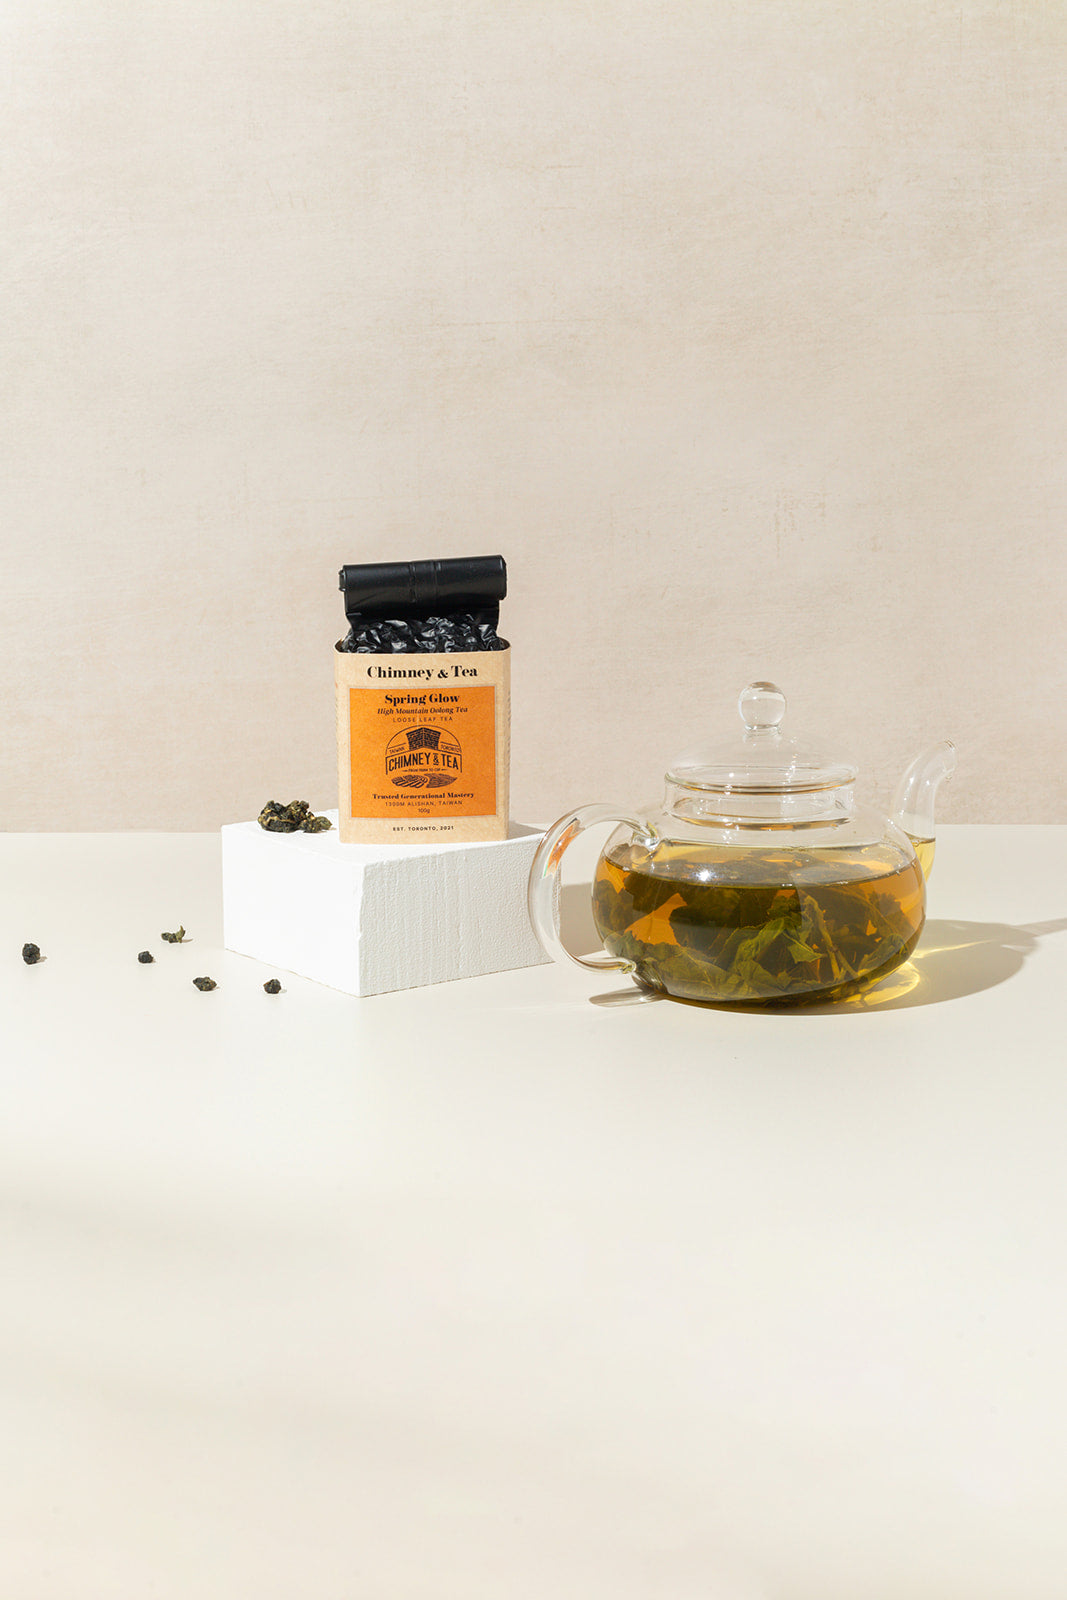 Taiwan Premium Alishan High Mountain Grown Oolong Tea 150 Gram/ 5.29 Oz  Gift Packaging 